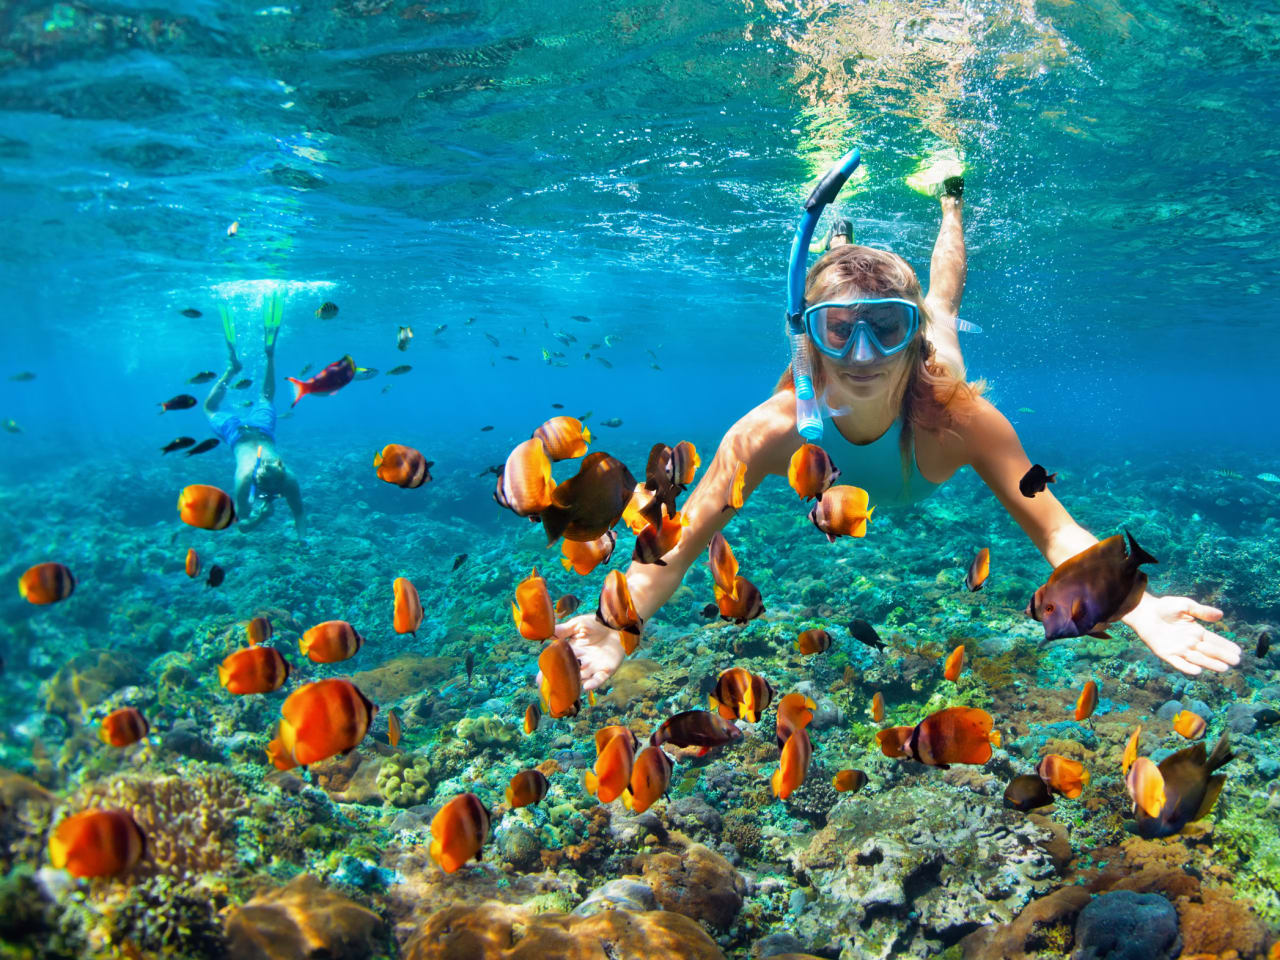 Farbenpracht und Artenvielfalt – das Rote Meer in Ägypten bietet beste Bedingungen zum Schnorcheln und Tauchen © Fotolia / Tropical Studio